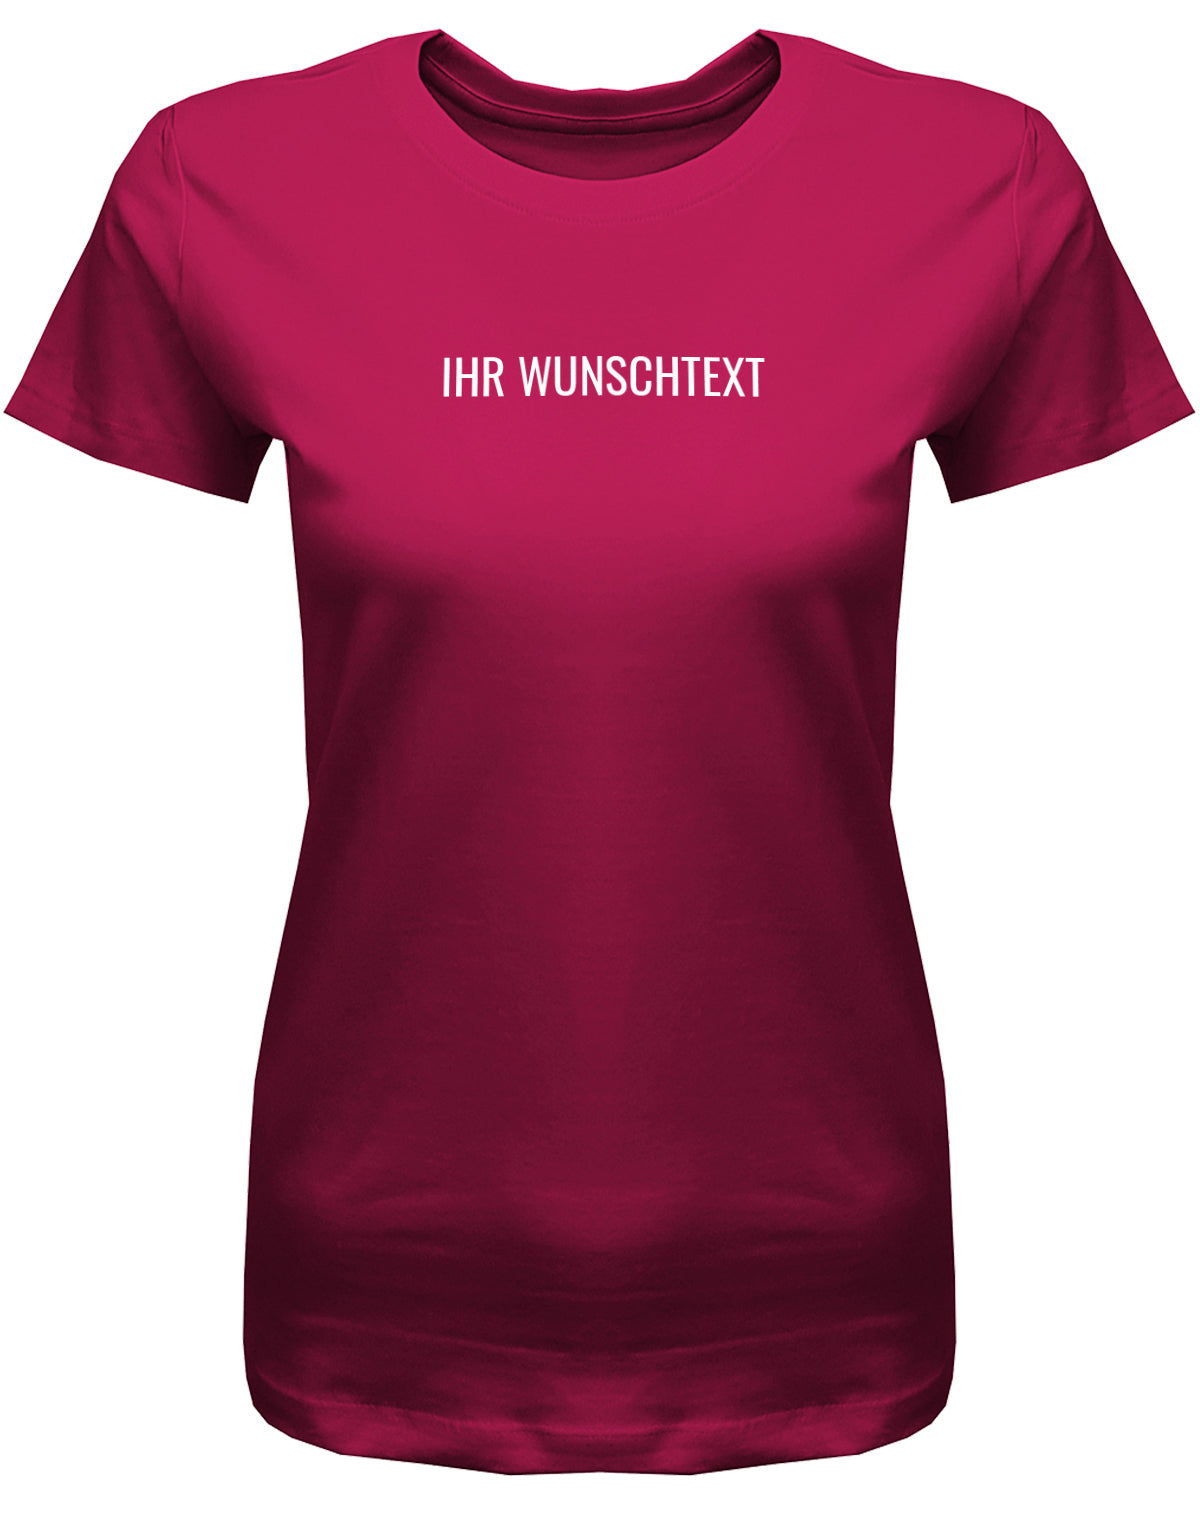 Frauen Tshirt mit Wunschtext. Minimalistisches Design.